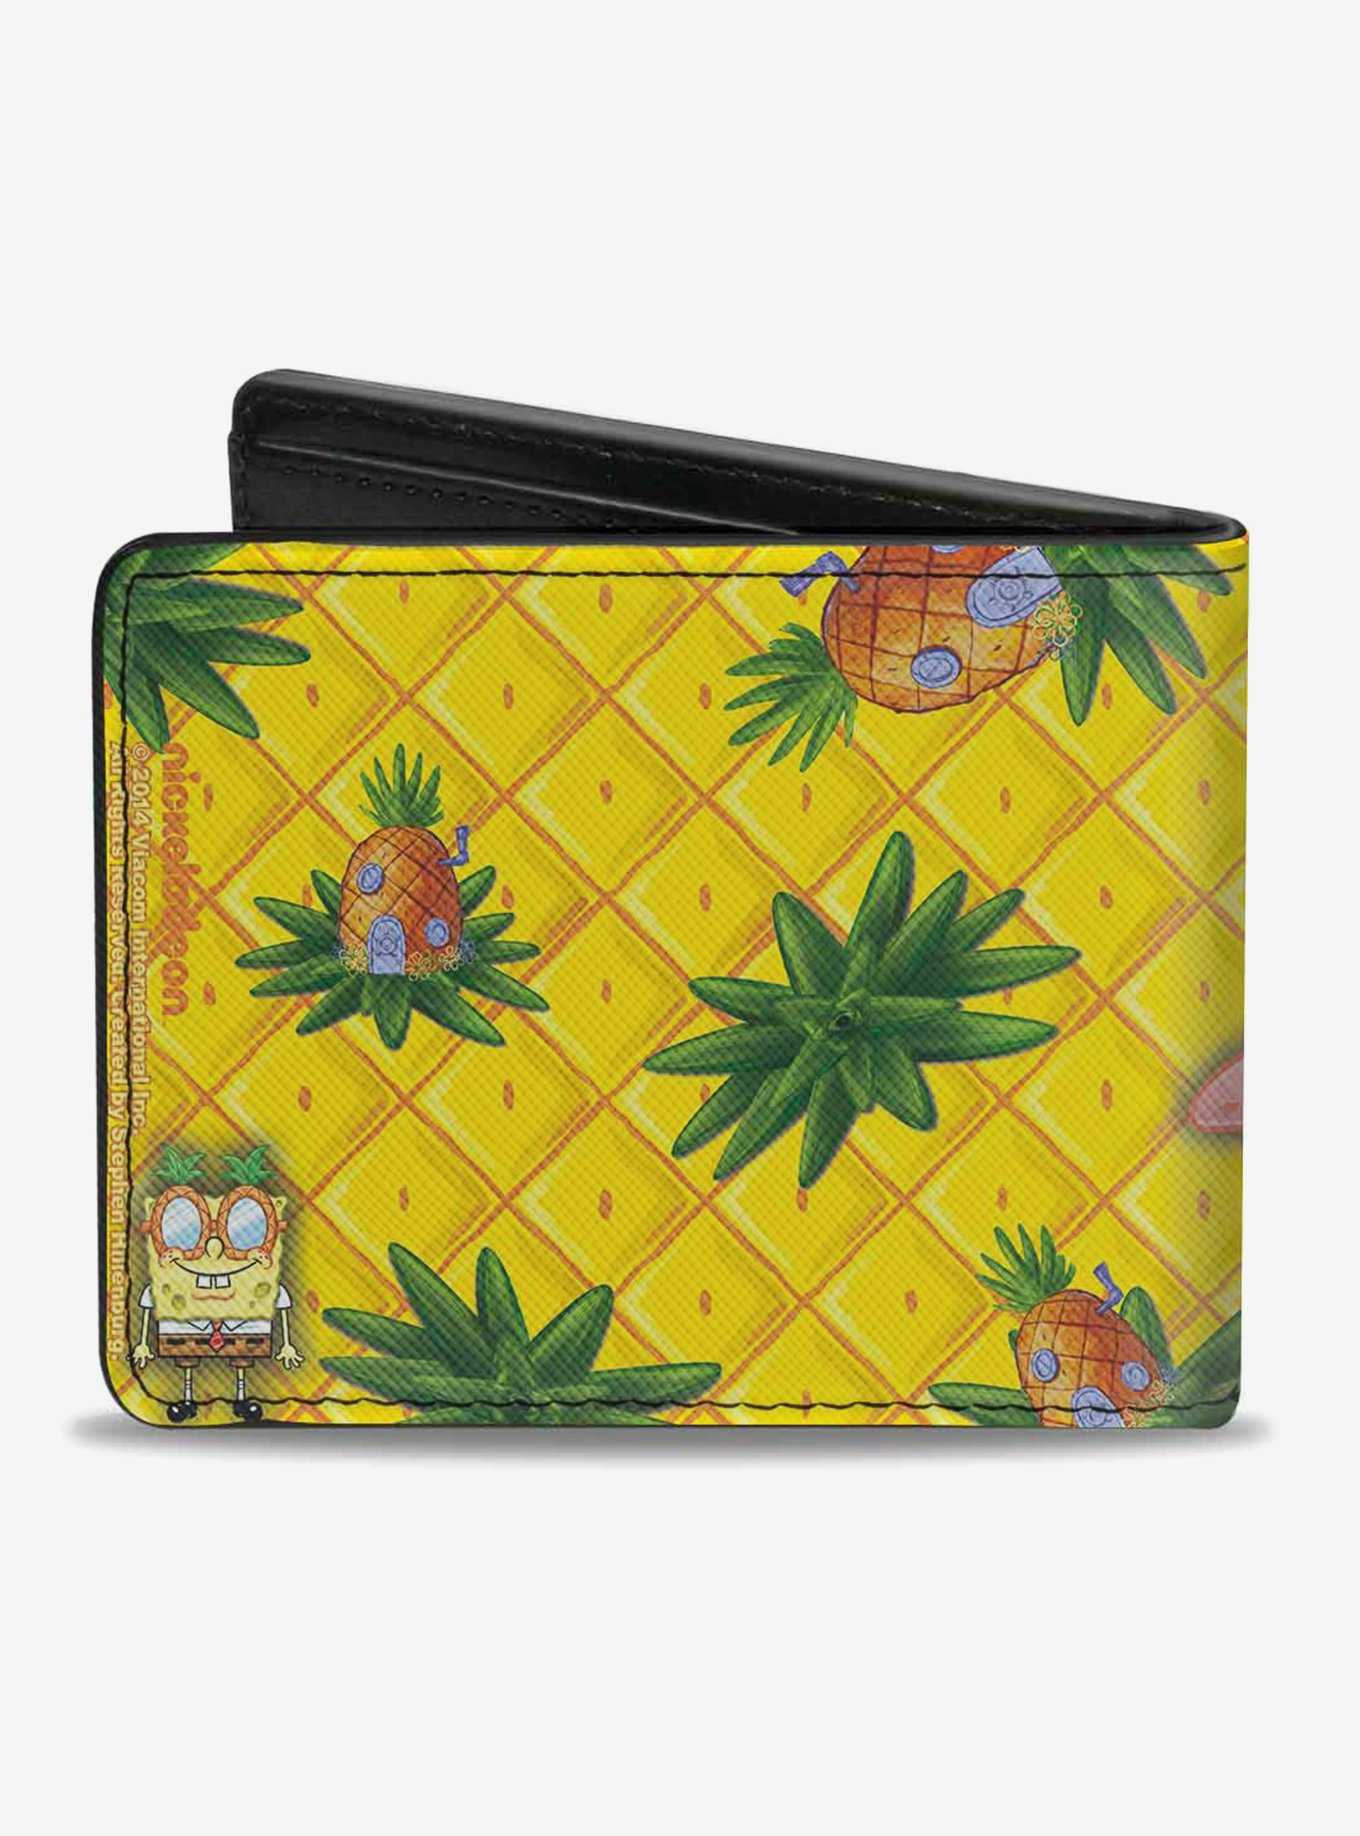 Spongebob Squarepants Patrick Starfish Pose Pineapple Bi-Fold Wallet, , hi-res